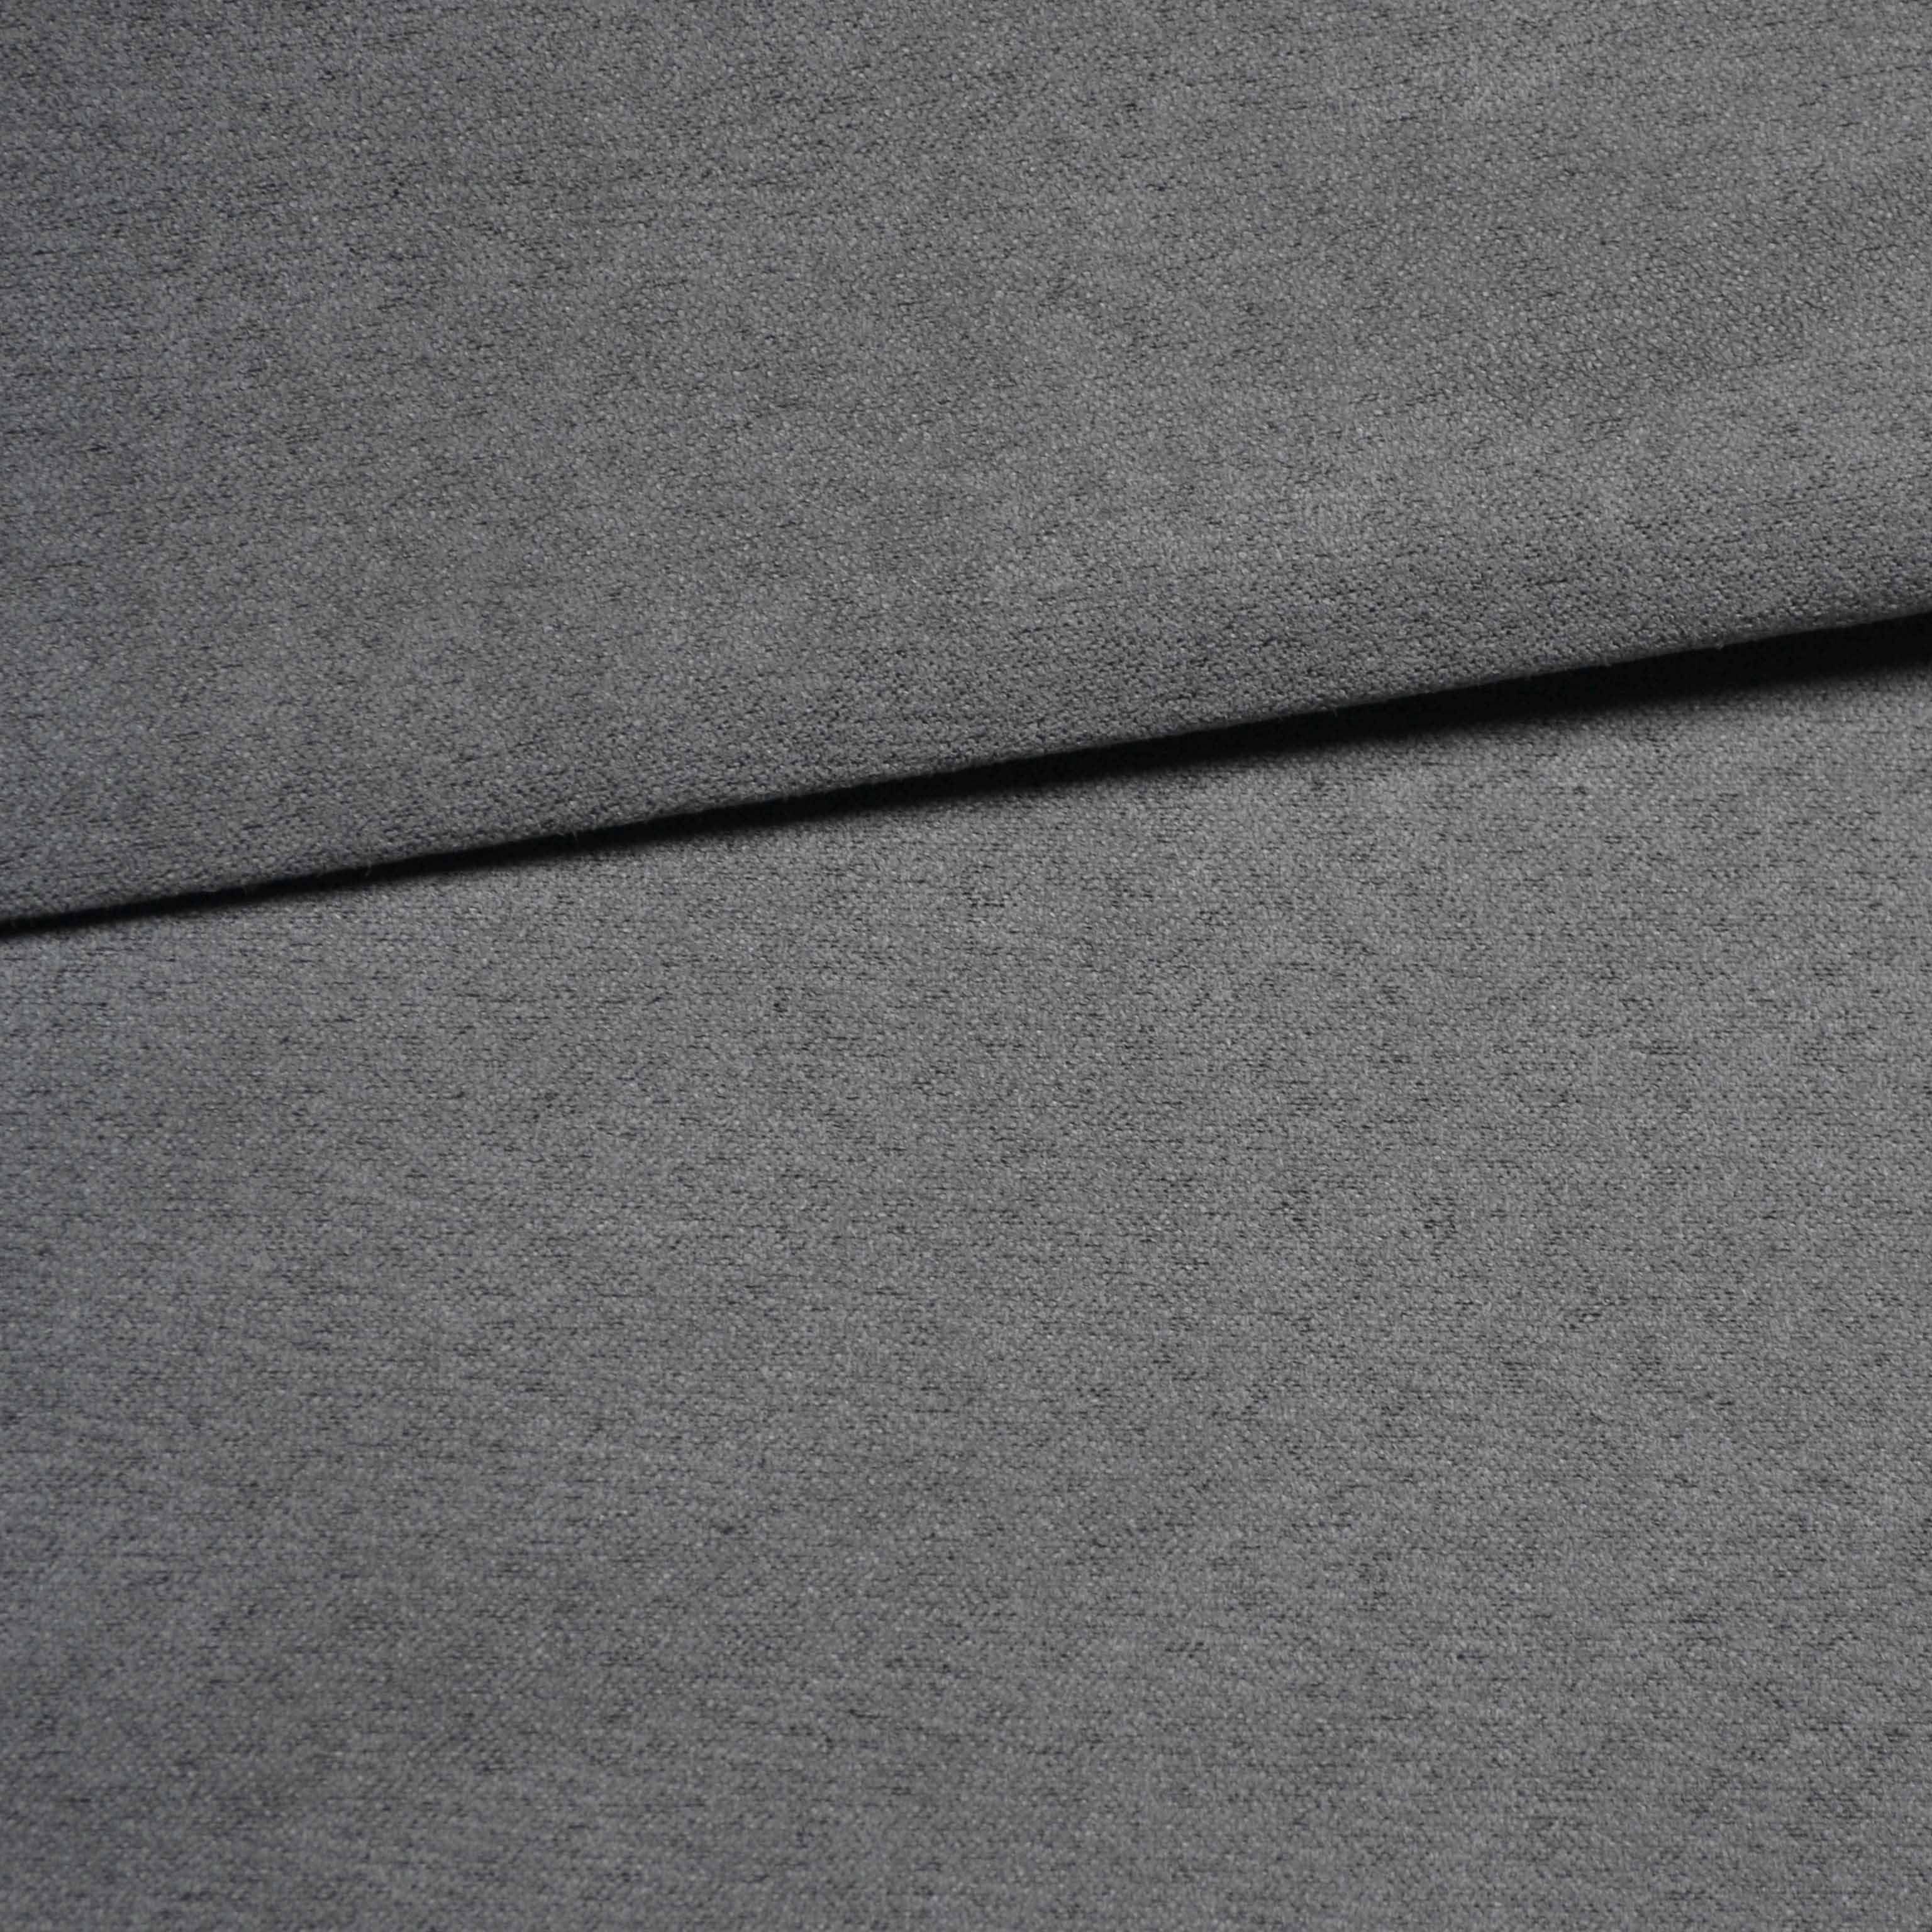 Tela para tapizar imitación de nobuck (cuero lijado) gris oscuro